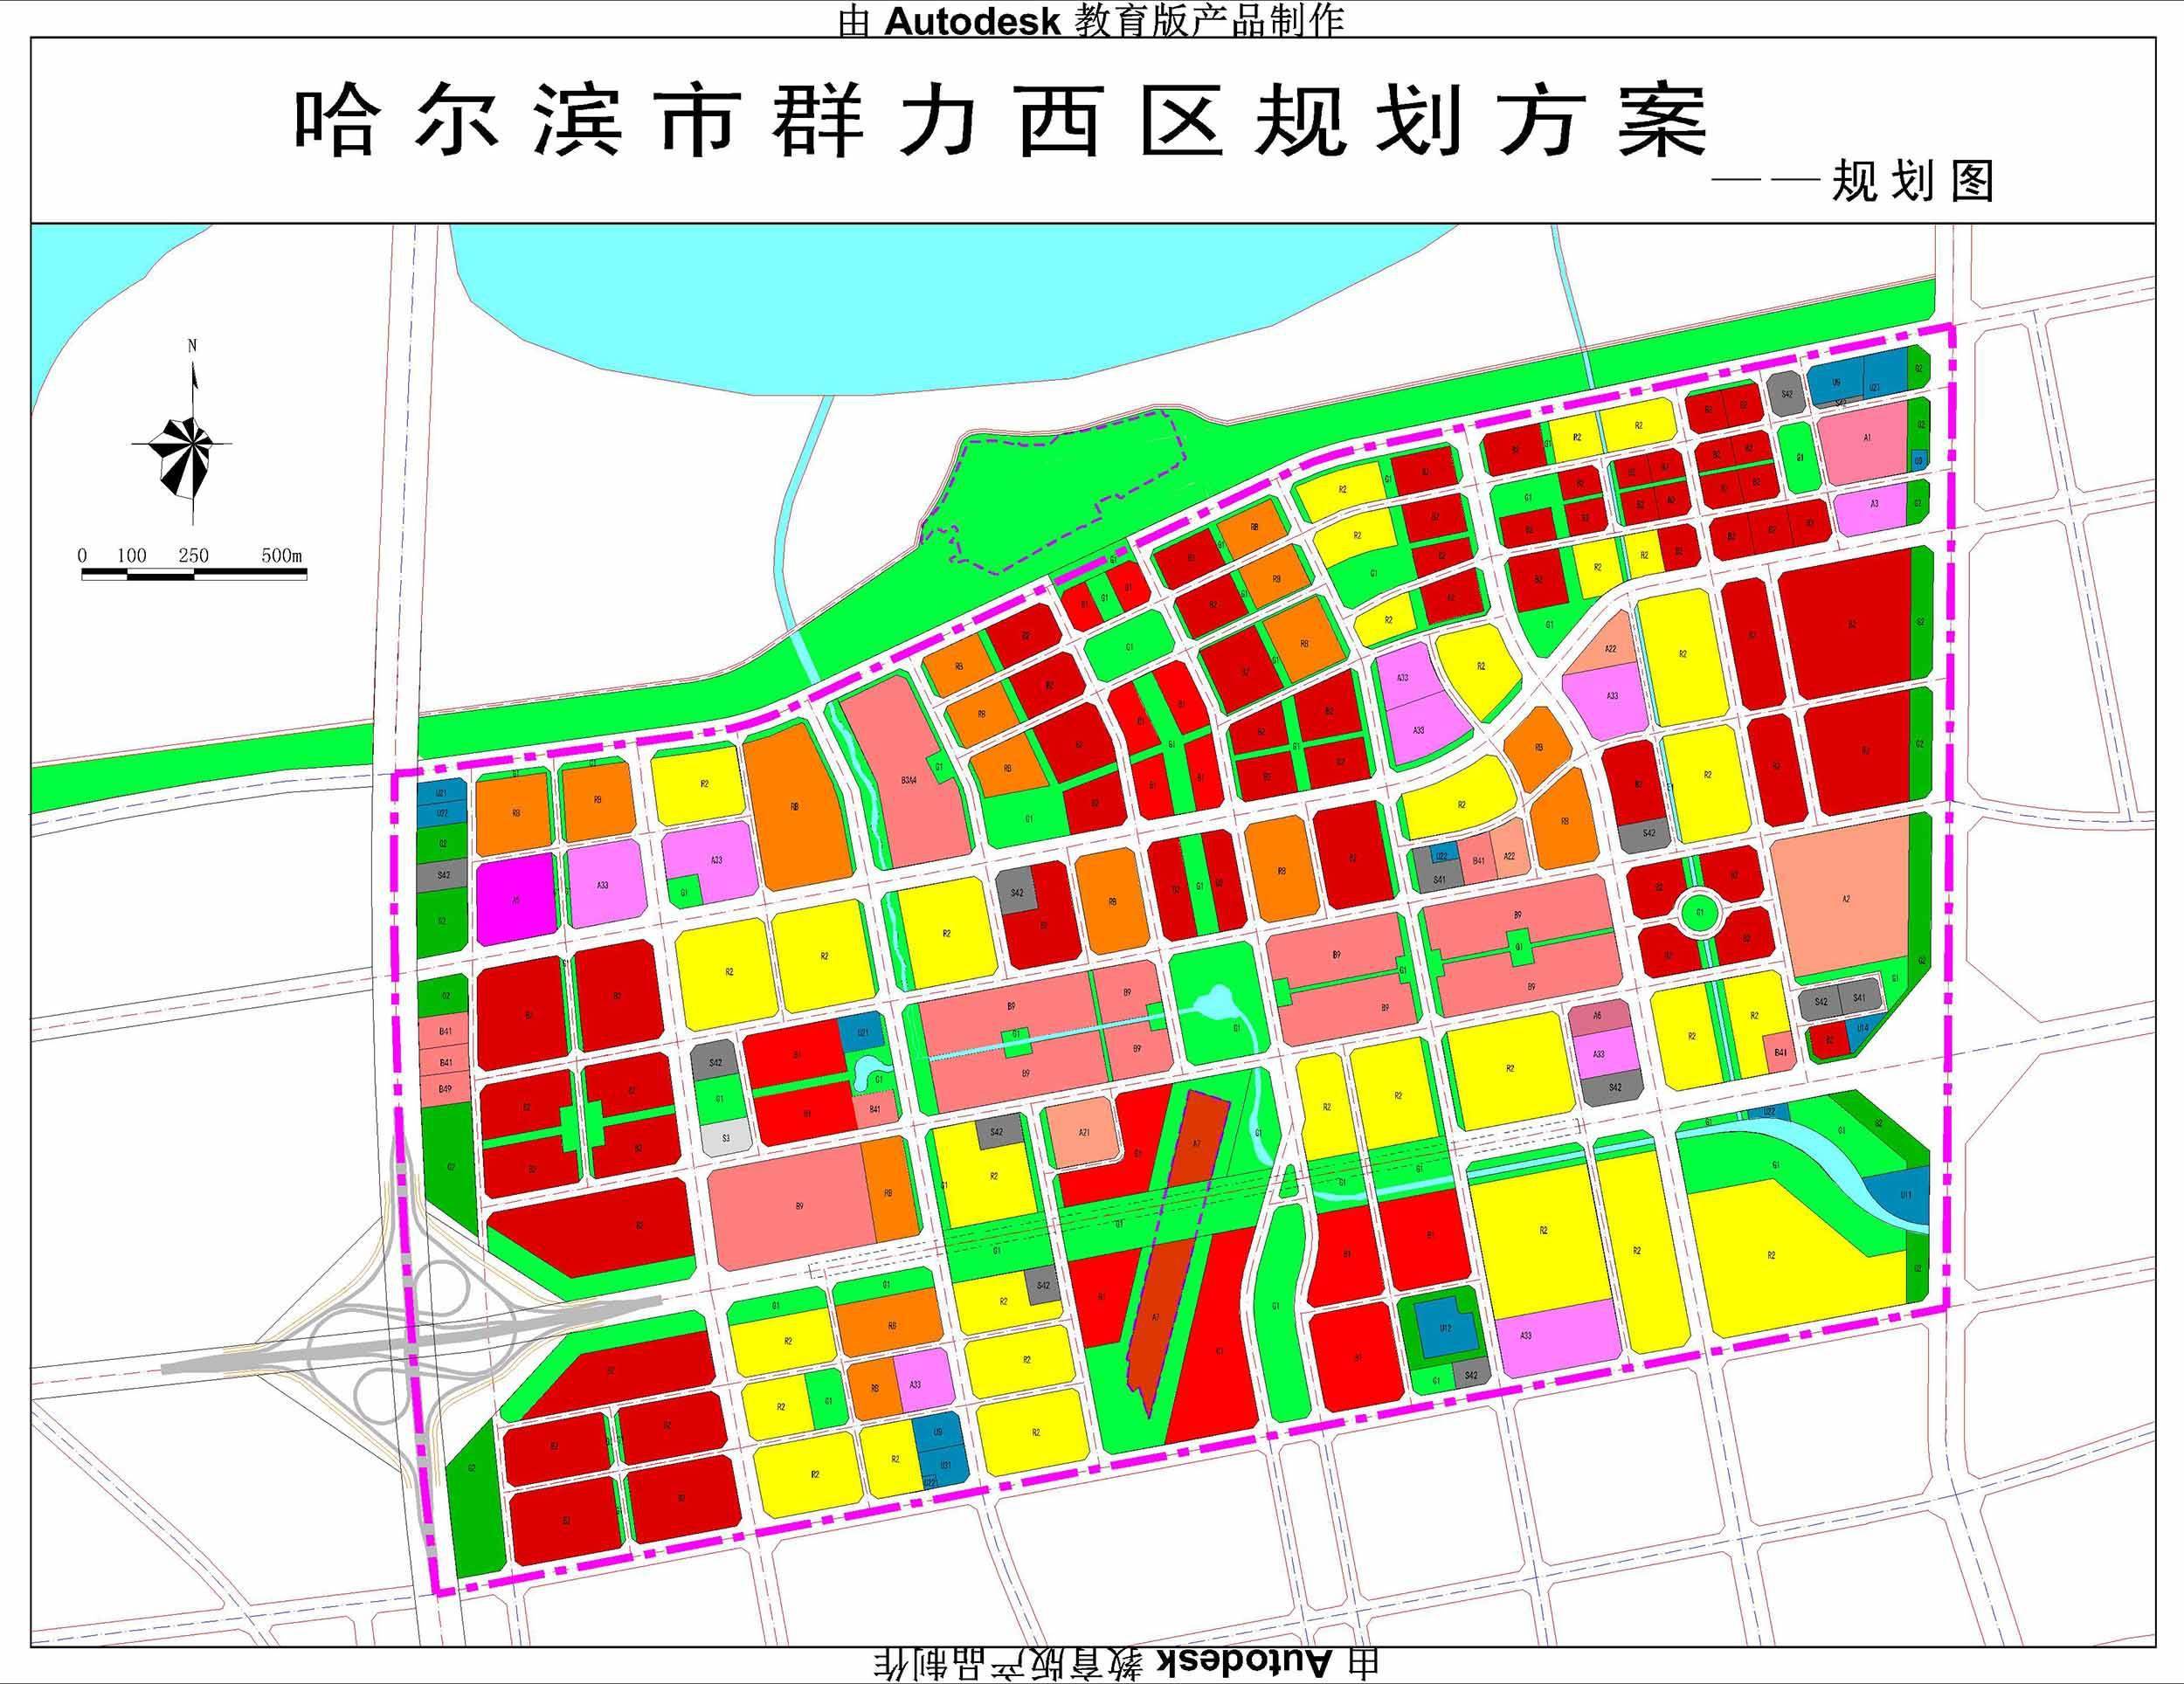 群力西区规划建设成为东北亚生态休闲智能商务区,形成哈尔滨新的城市